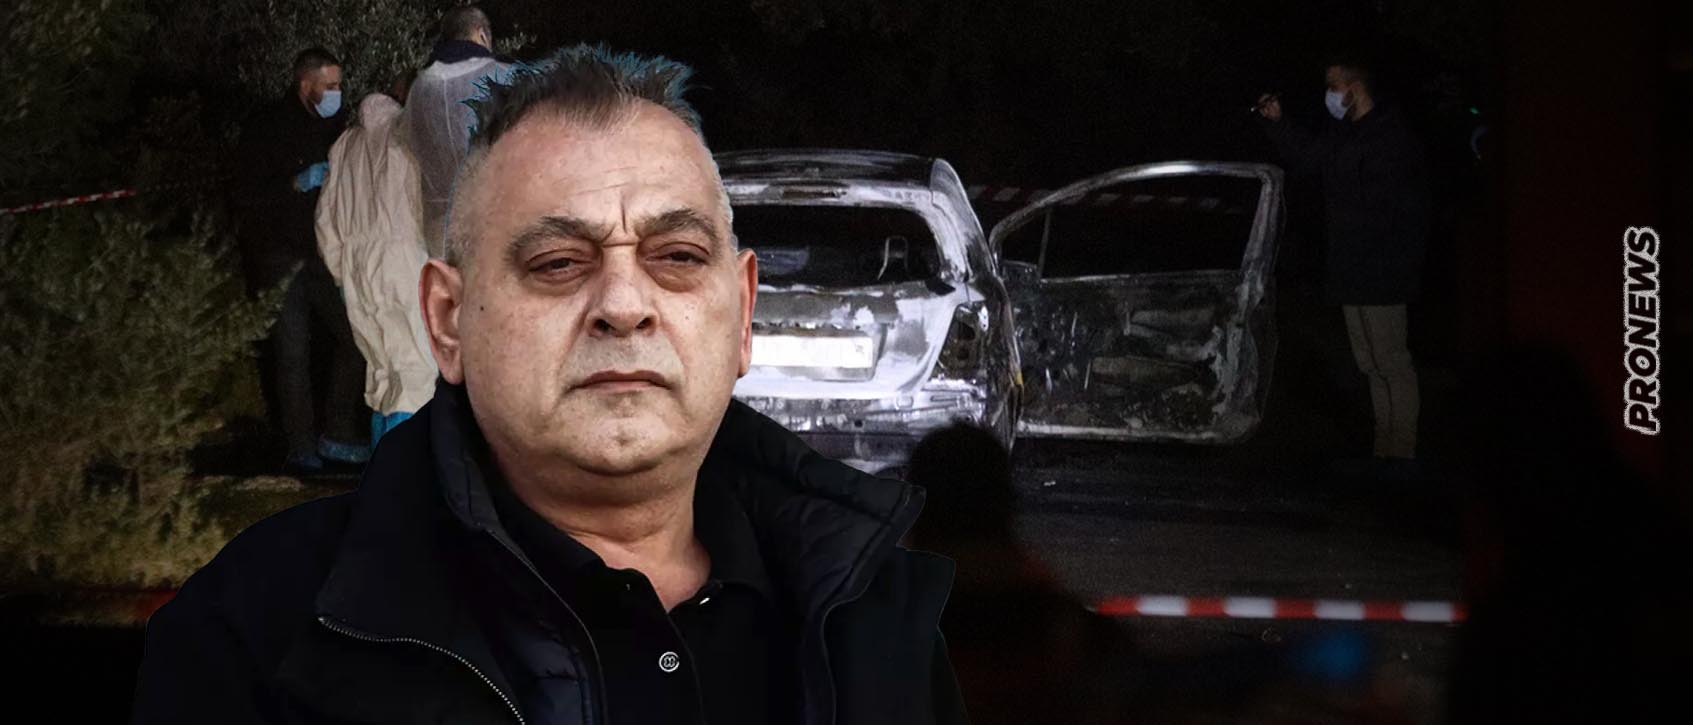 Ο δολοφονηθείς Χρήστος Γιαλιάς φοβόταν για την ζωή του: Είχε προσωπική φρουρά, κάμερες στο σπίτι και άλλαζε συνεχώς αυτοκίνητα